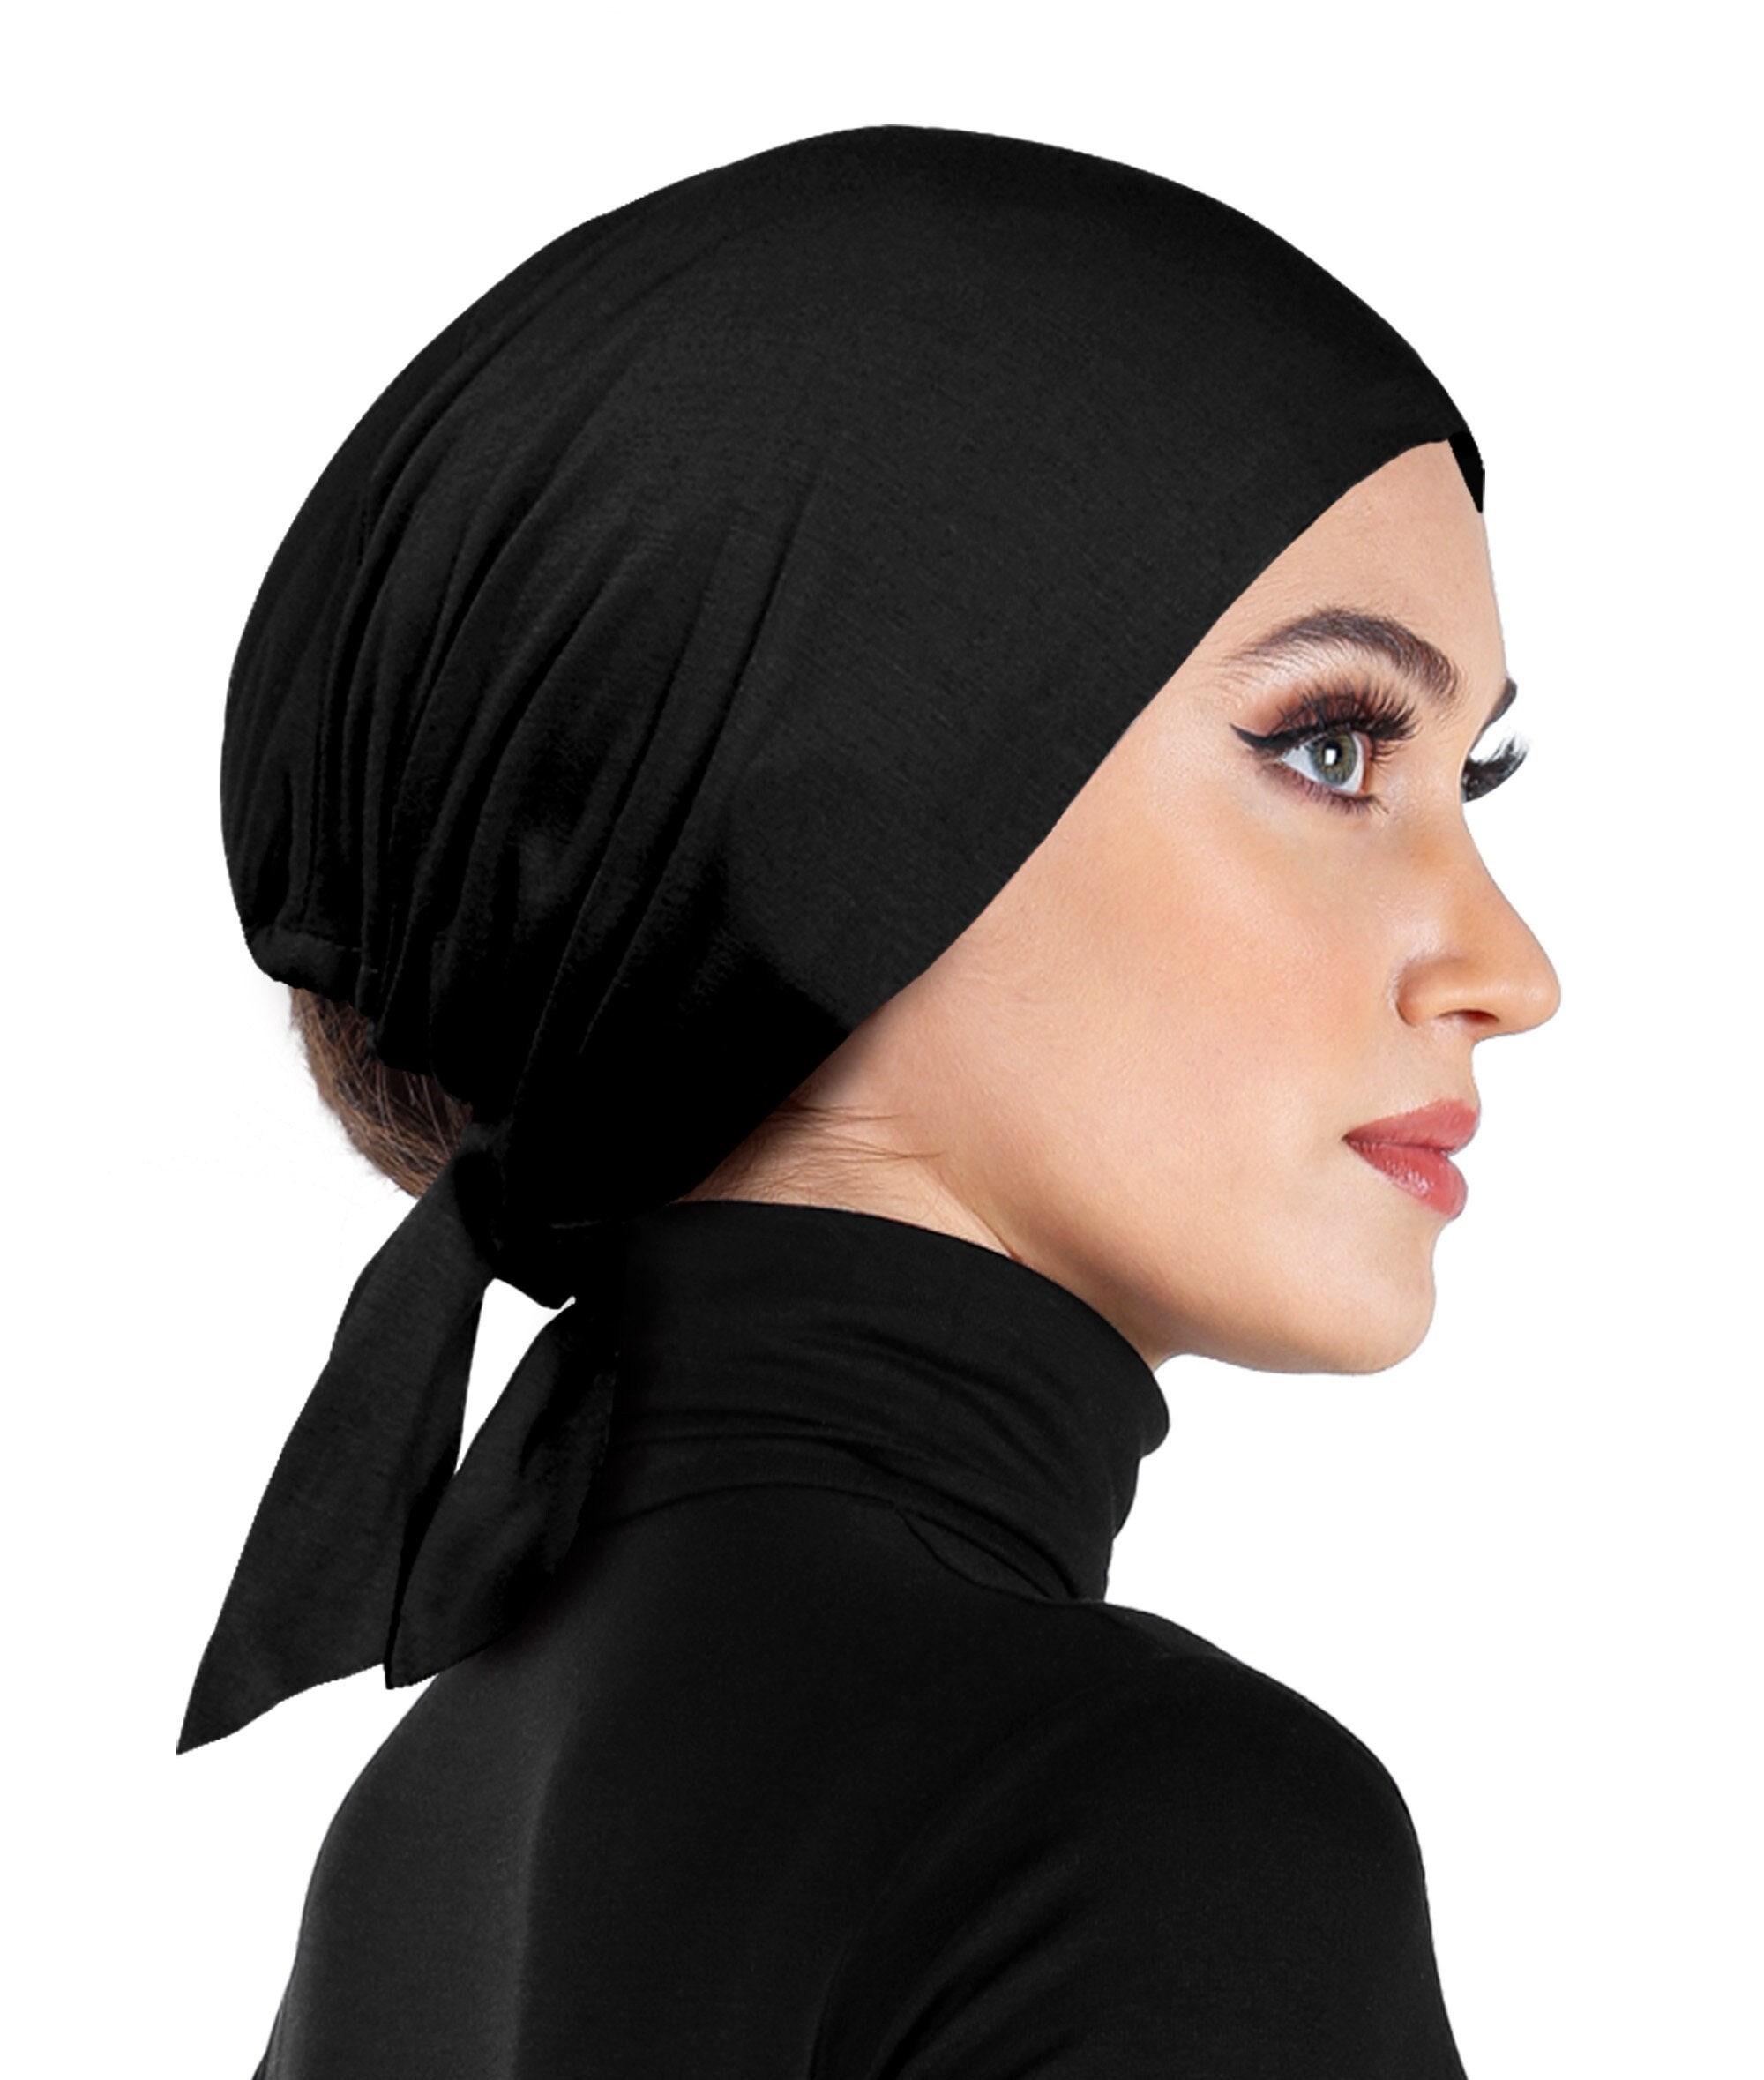 Hijab Undercap,Salmon,B 34